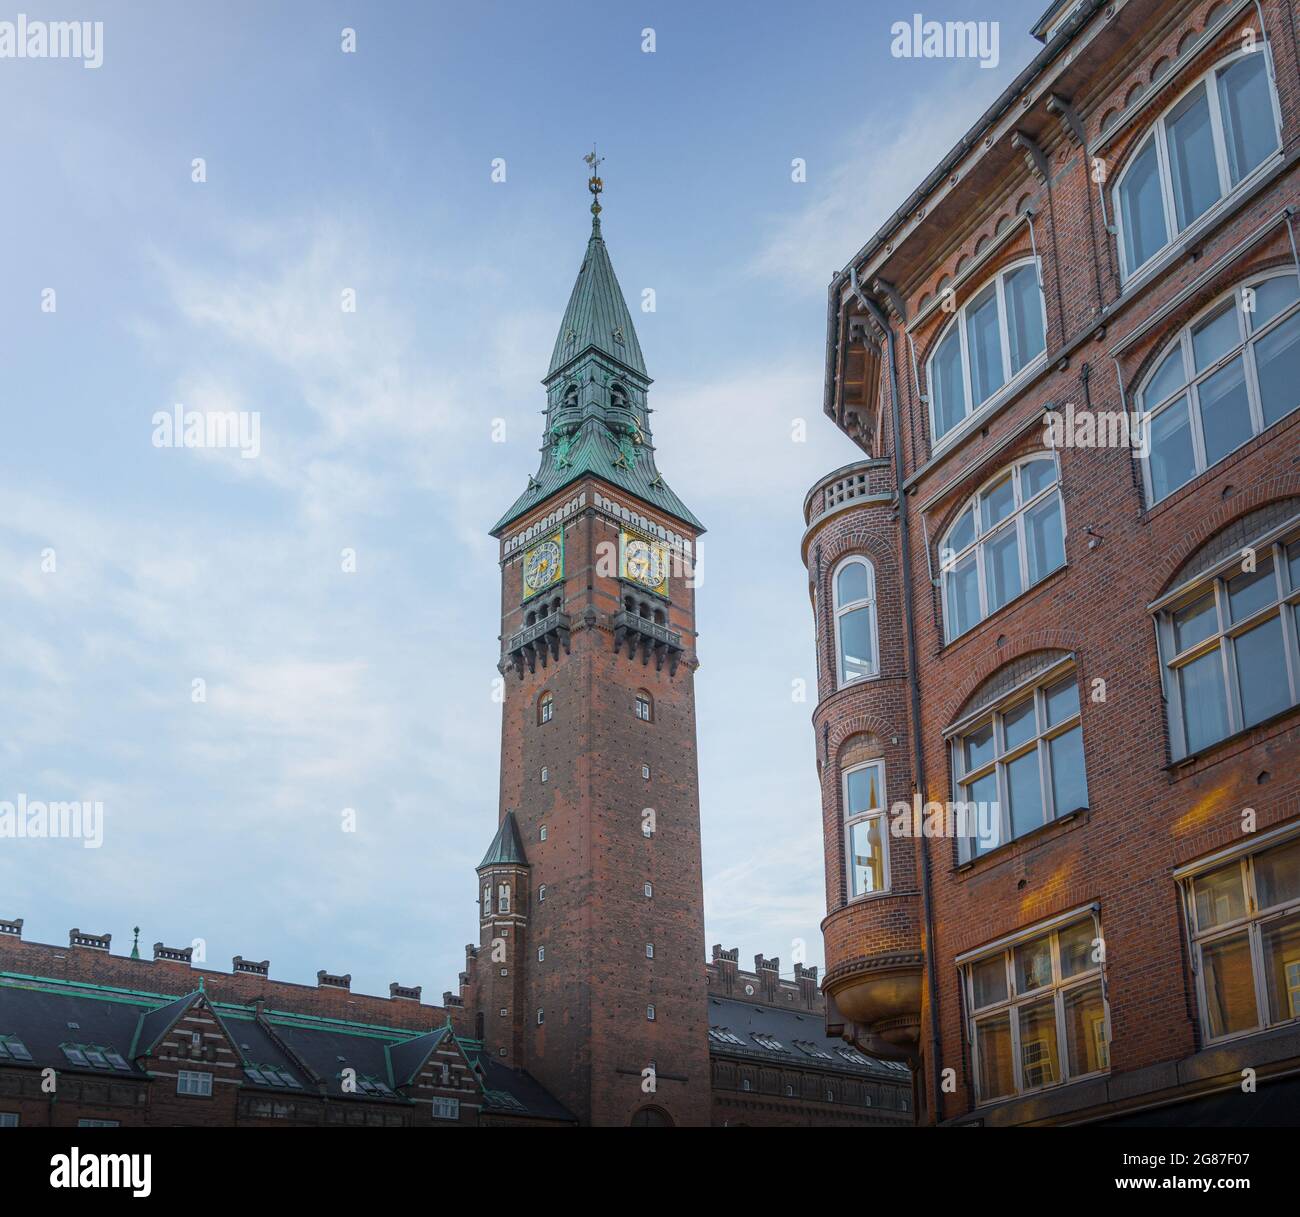 Tour de l'hôtel de ville de Copenhague - Copenhague, Danemark Banque D'Images